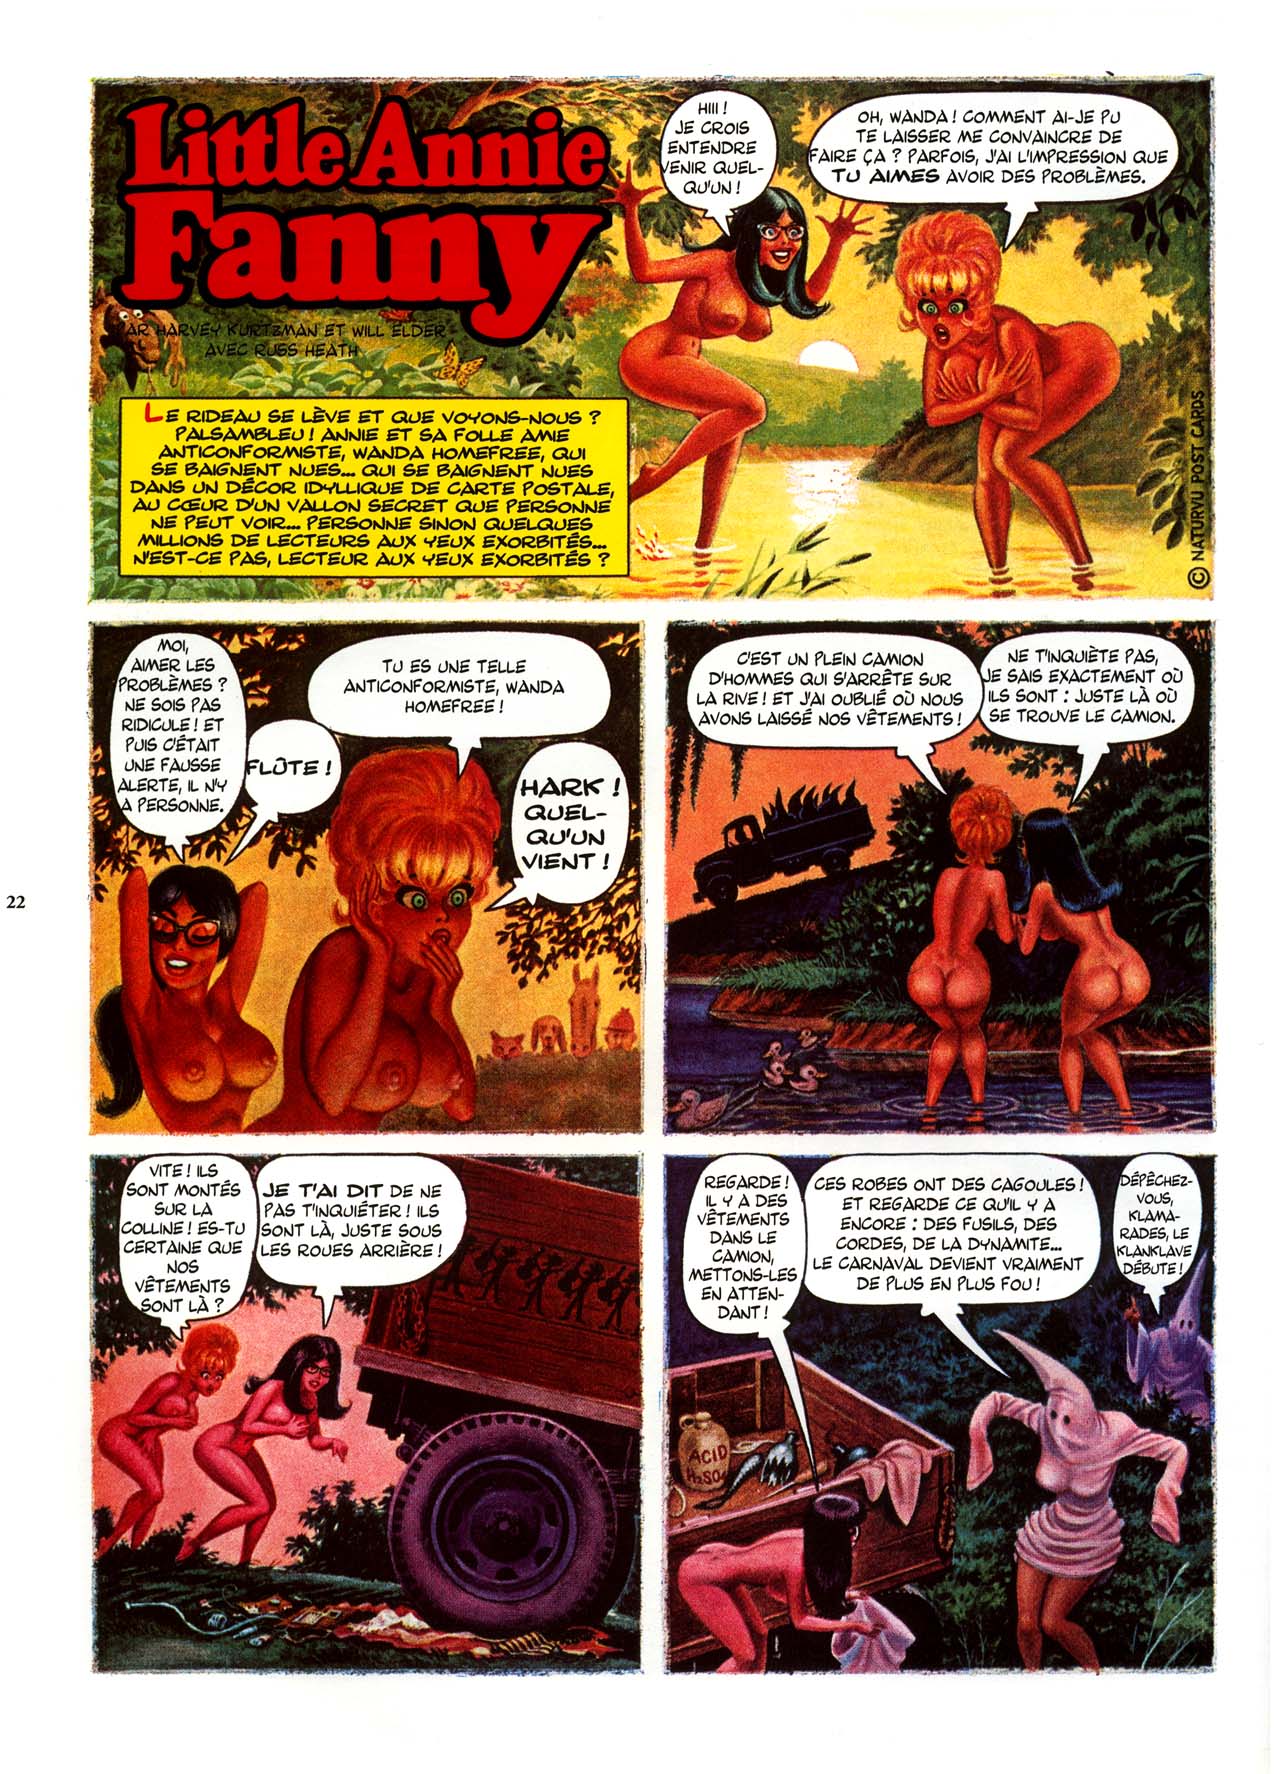 Playboys Little Annie Fanny Vol. 2 - 1965-1970 numero d'image 22